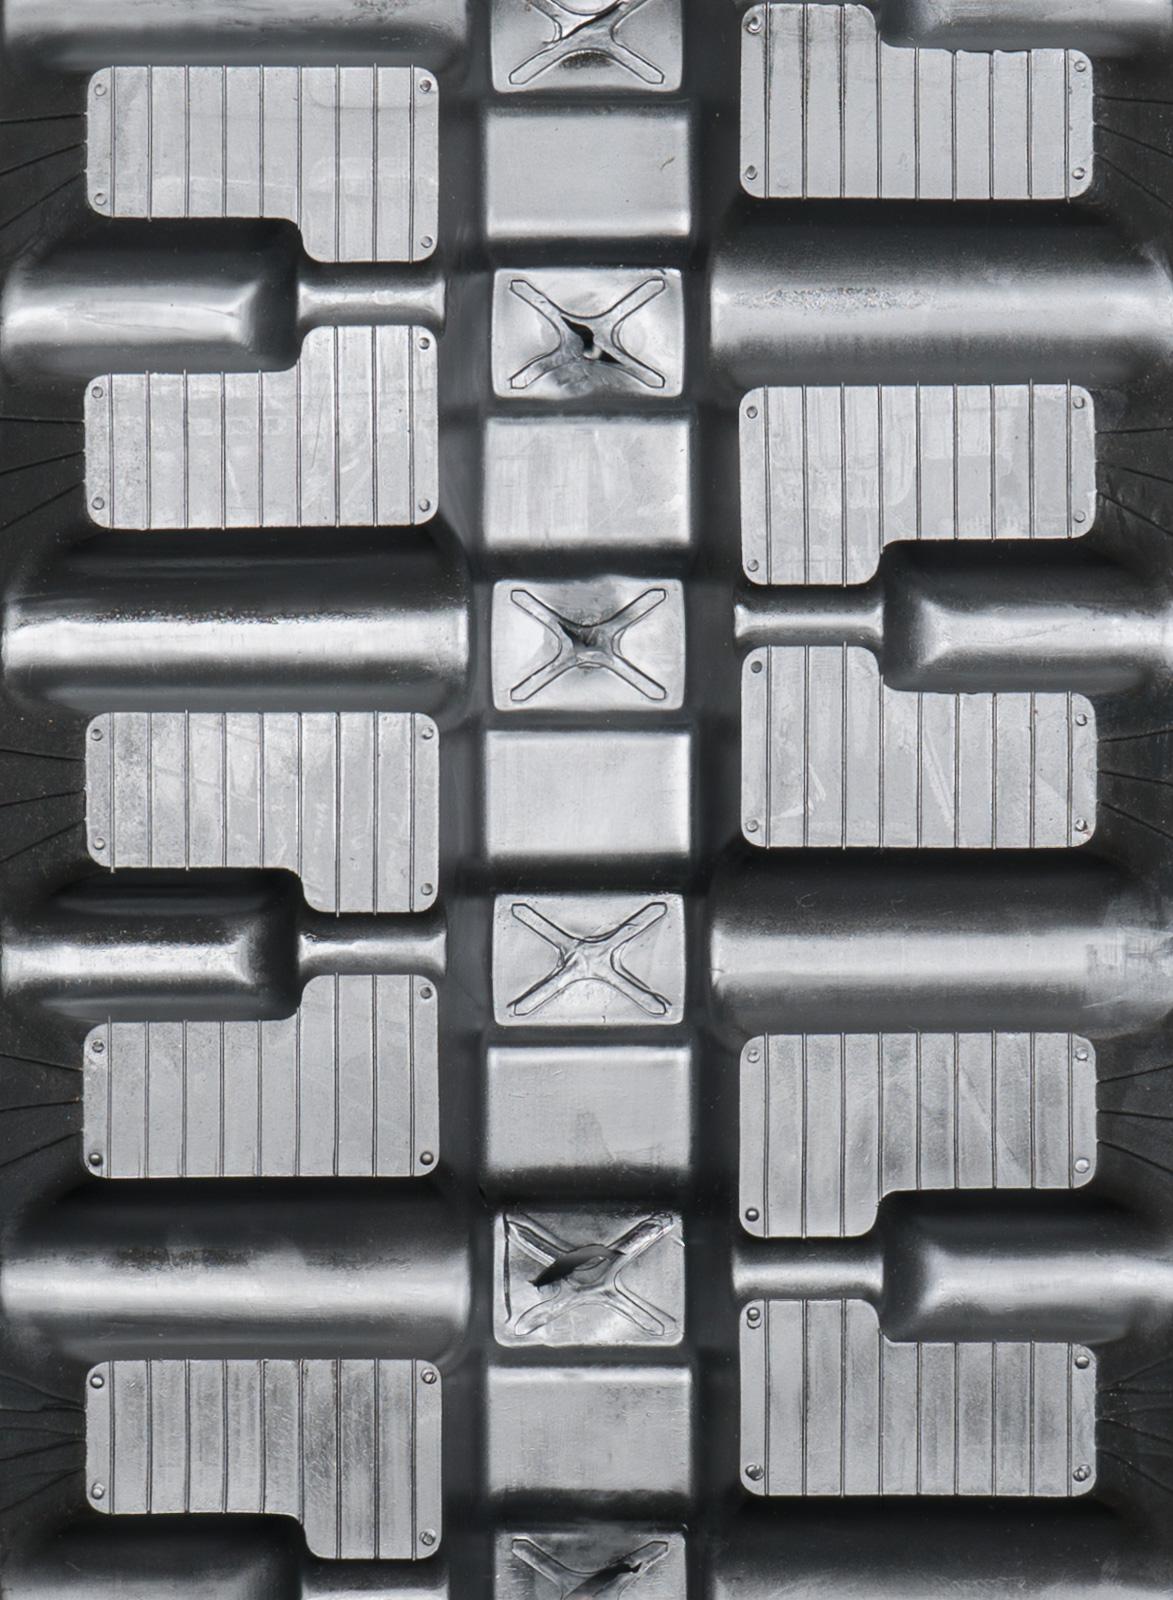 set of 2 13" heavy duty c pattern rubber track (320x86bx52)